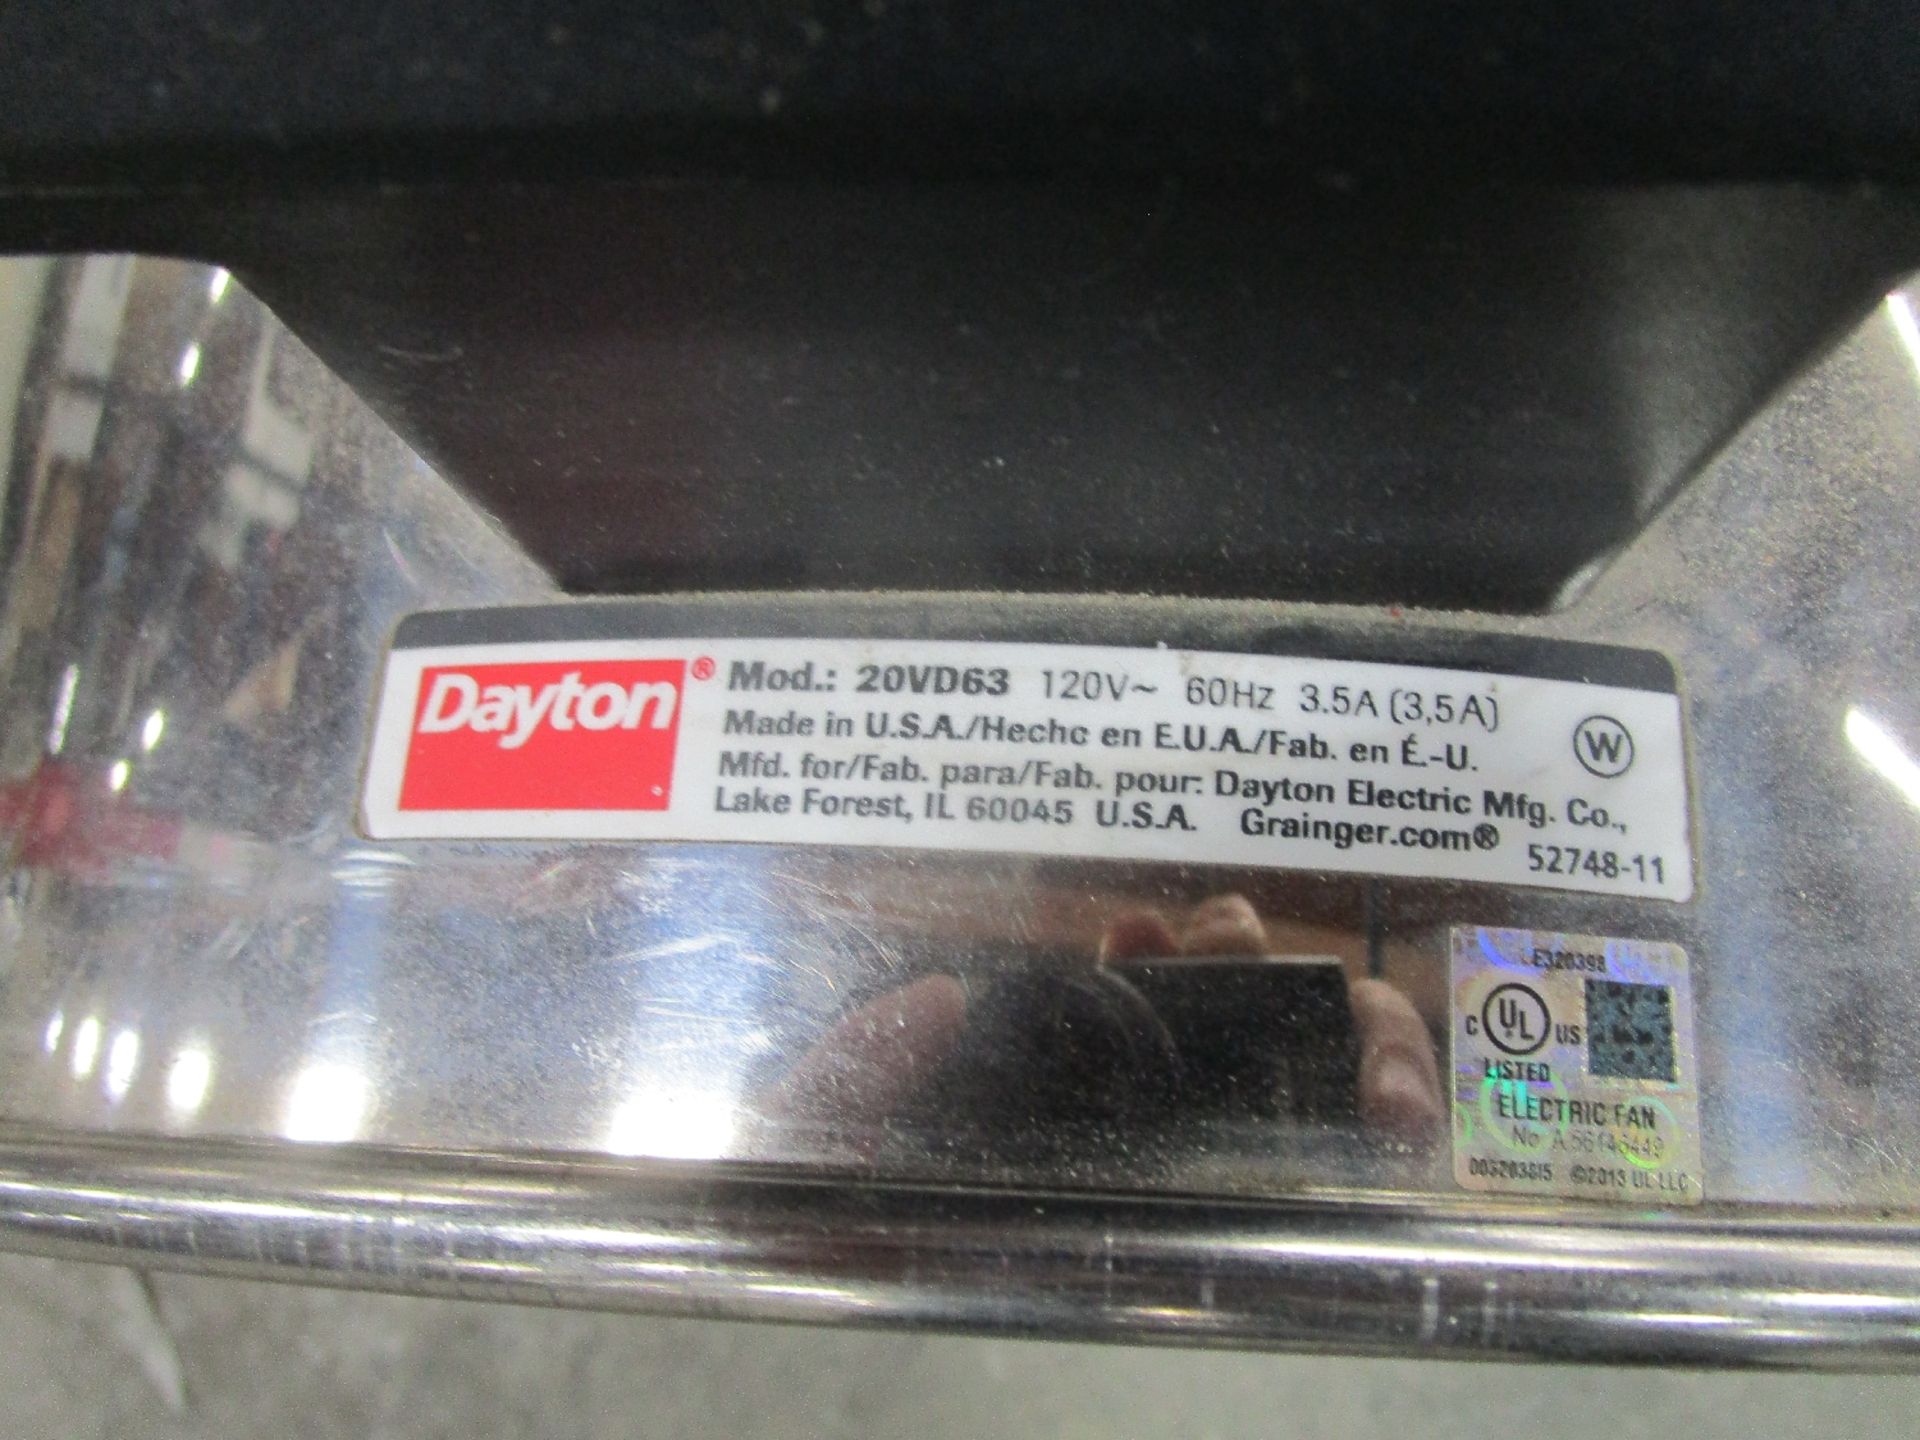 Dayton 20VD63 Carpet Dryer - Image 2 of 2